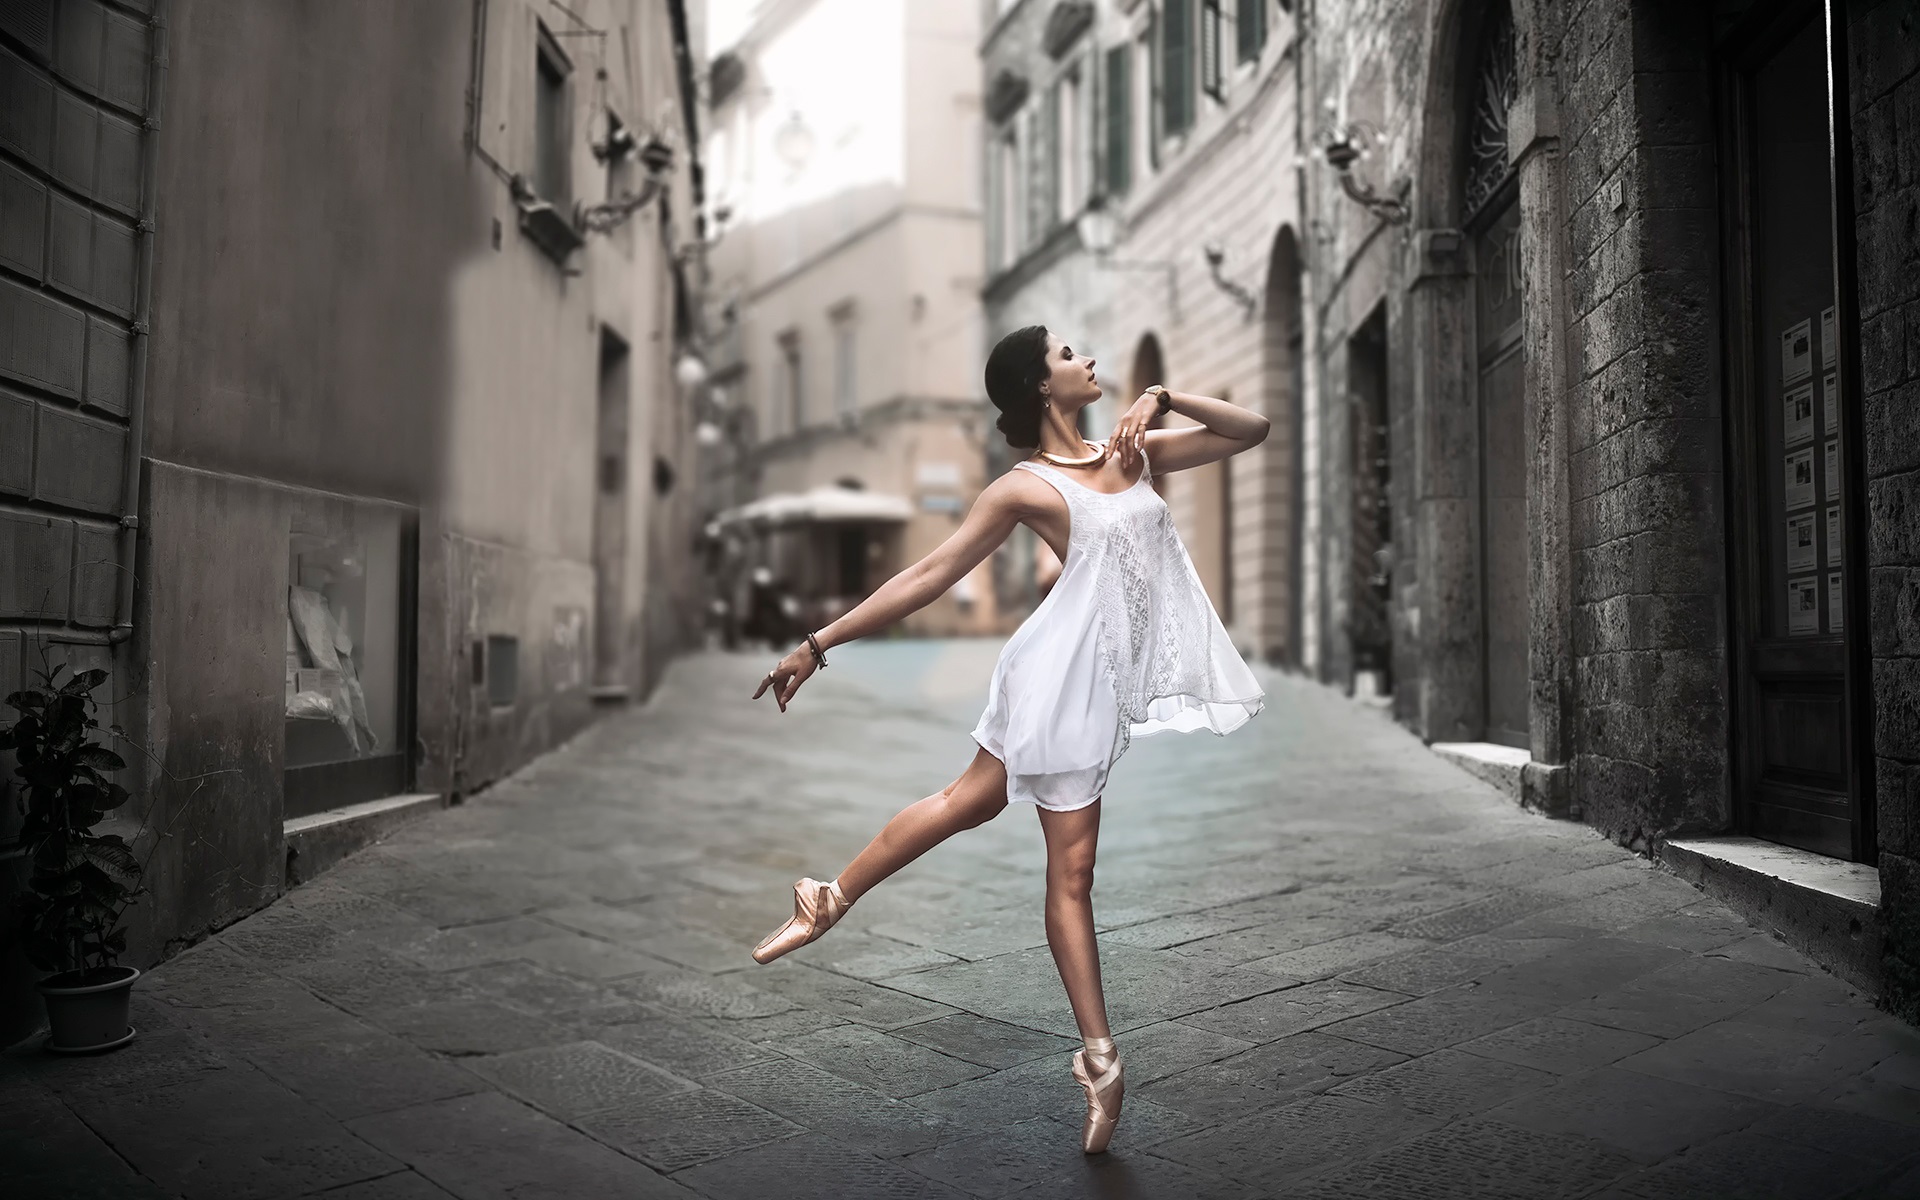 White-dress-girl-dance-in-the-street_1920x1200.jpg